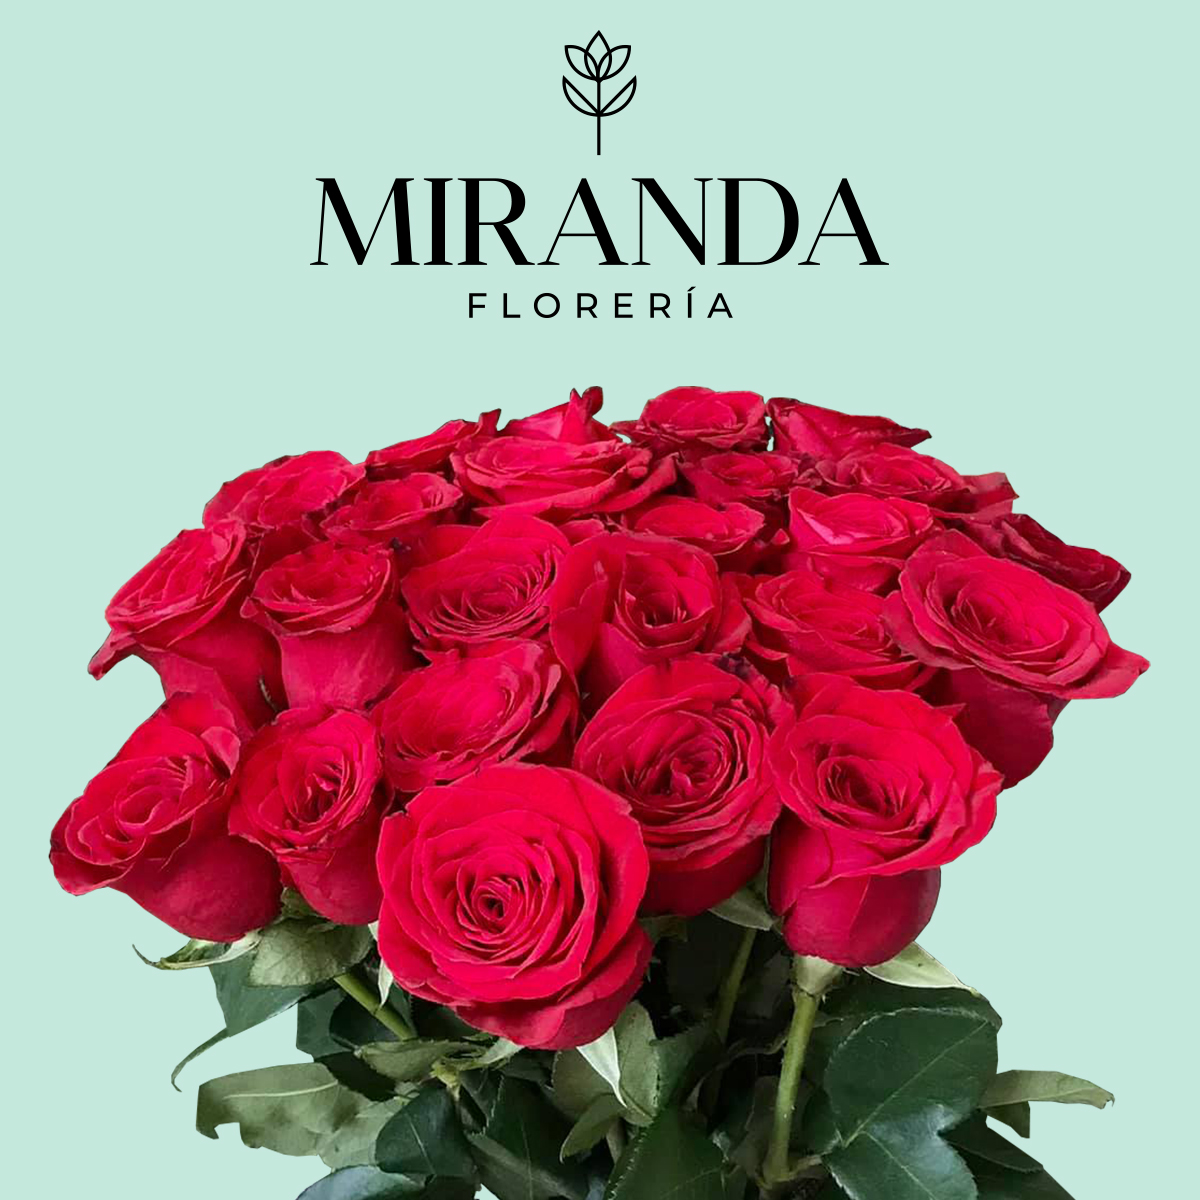 (c) Mirandafloreria.com